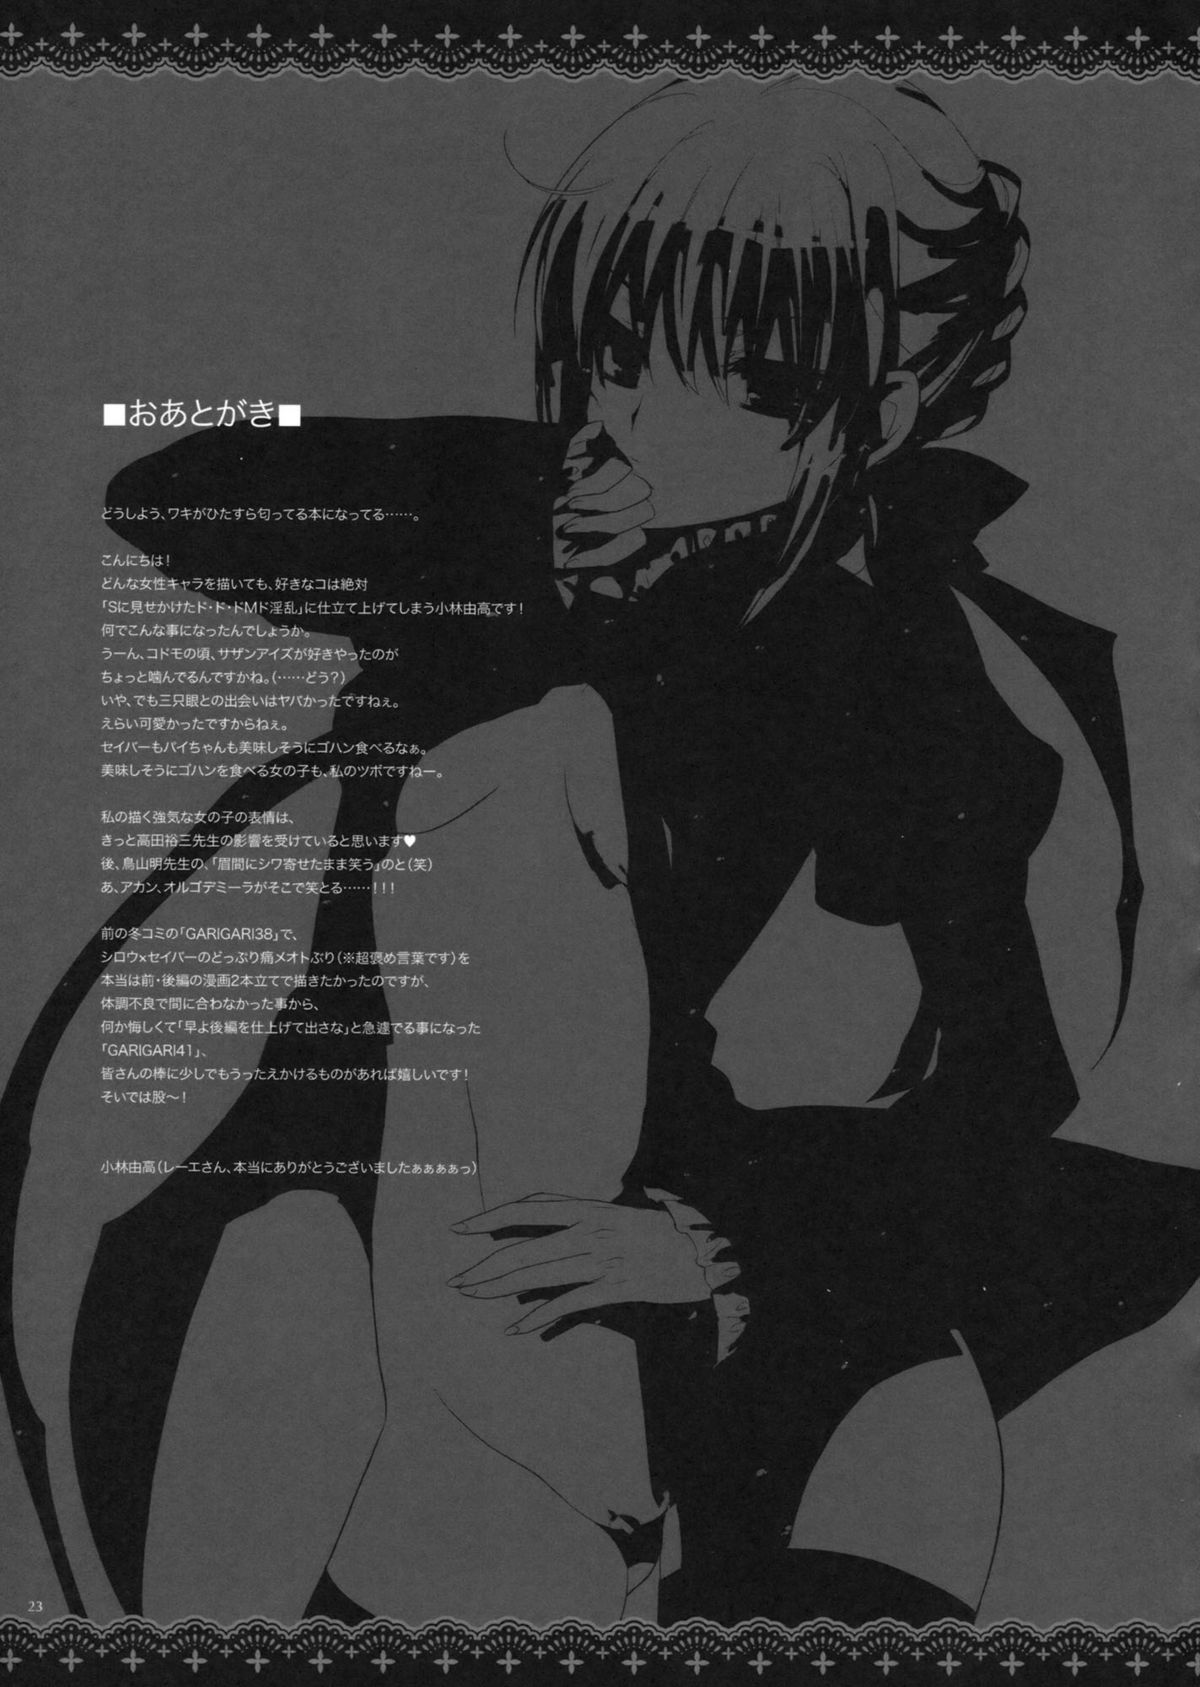 [アレマテオレマ (小林由高)] GARIGARI 41 (Fate/stay night) [第2刷 2012年03月25日]